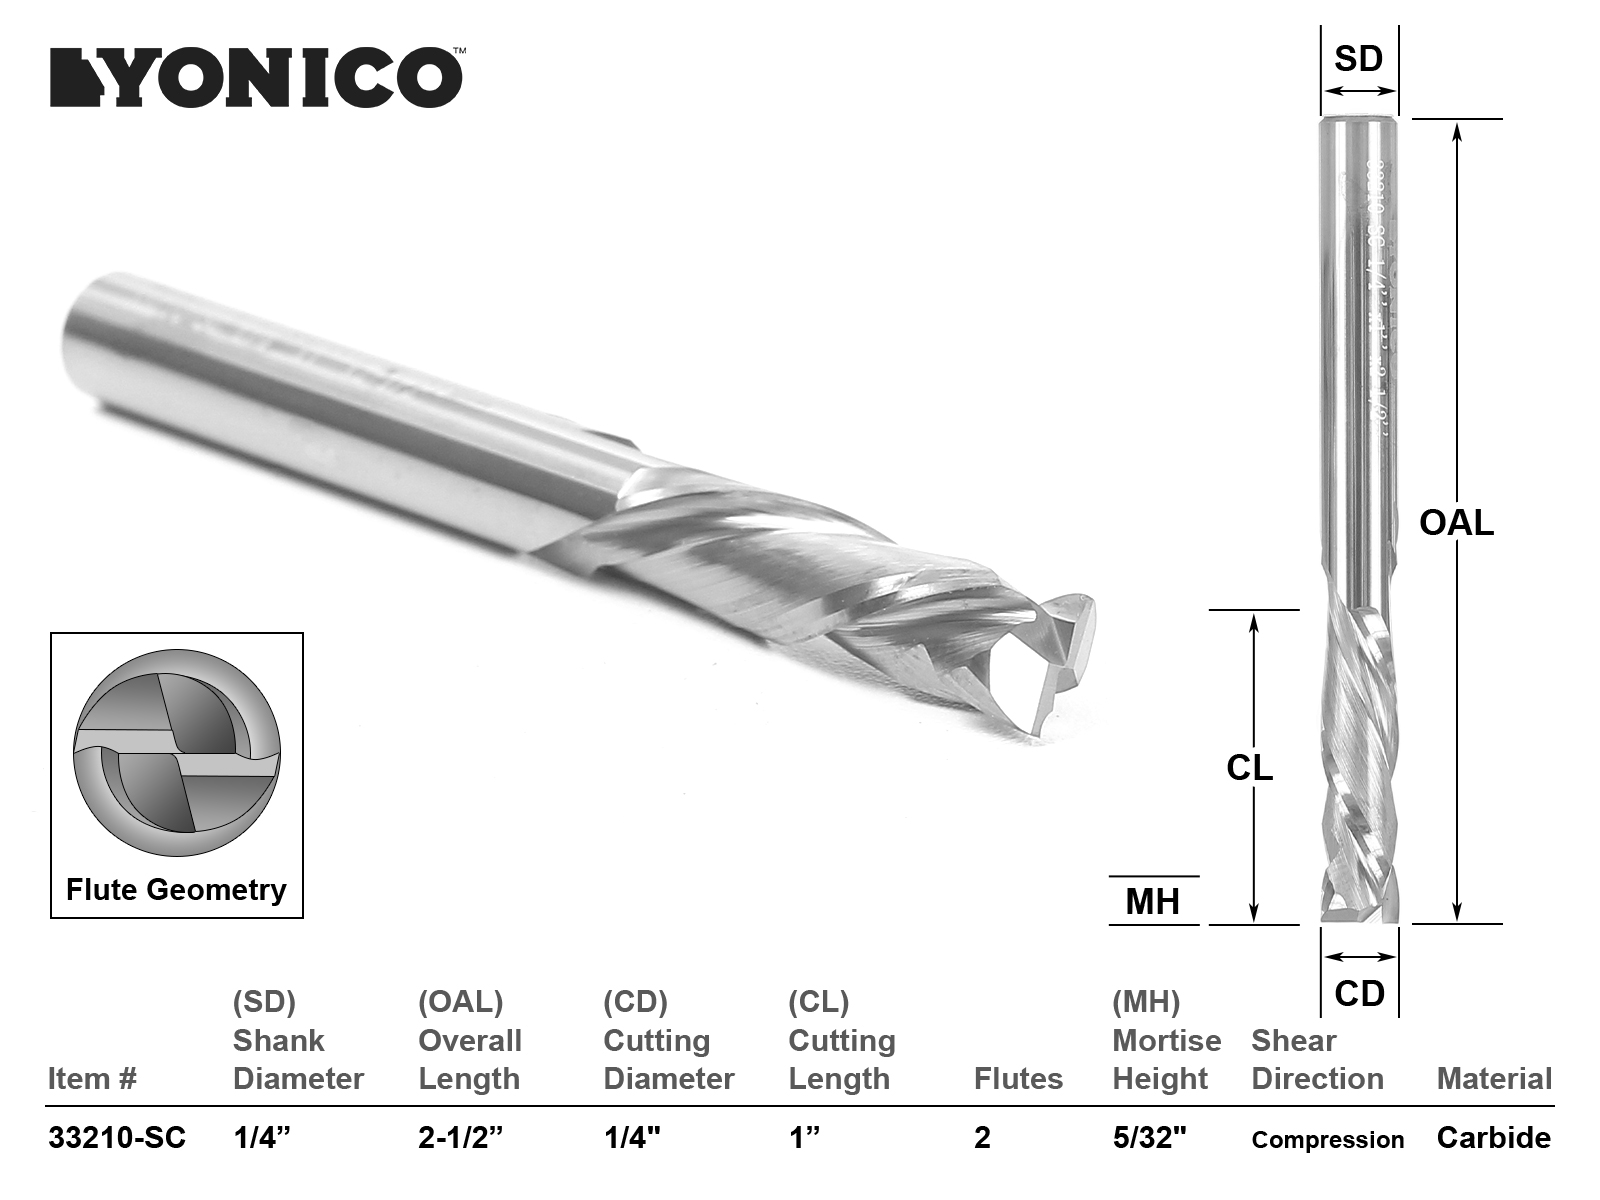 Yonico 33220-SC 2 Flute Compression CNC Router Bit 3/8" Shank 3/8" Dia 